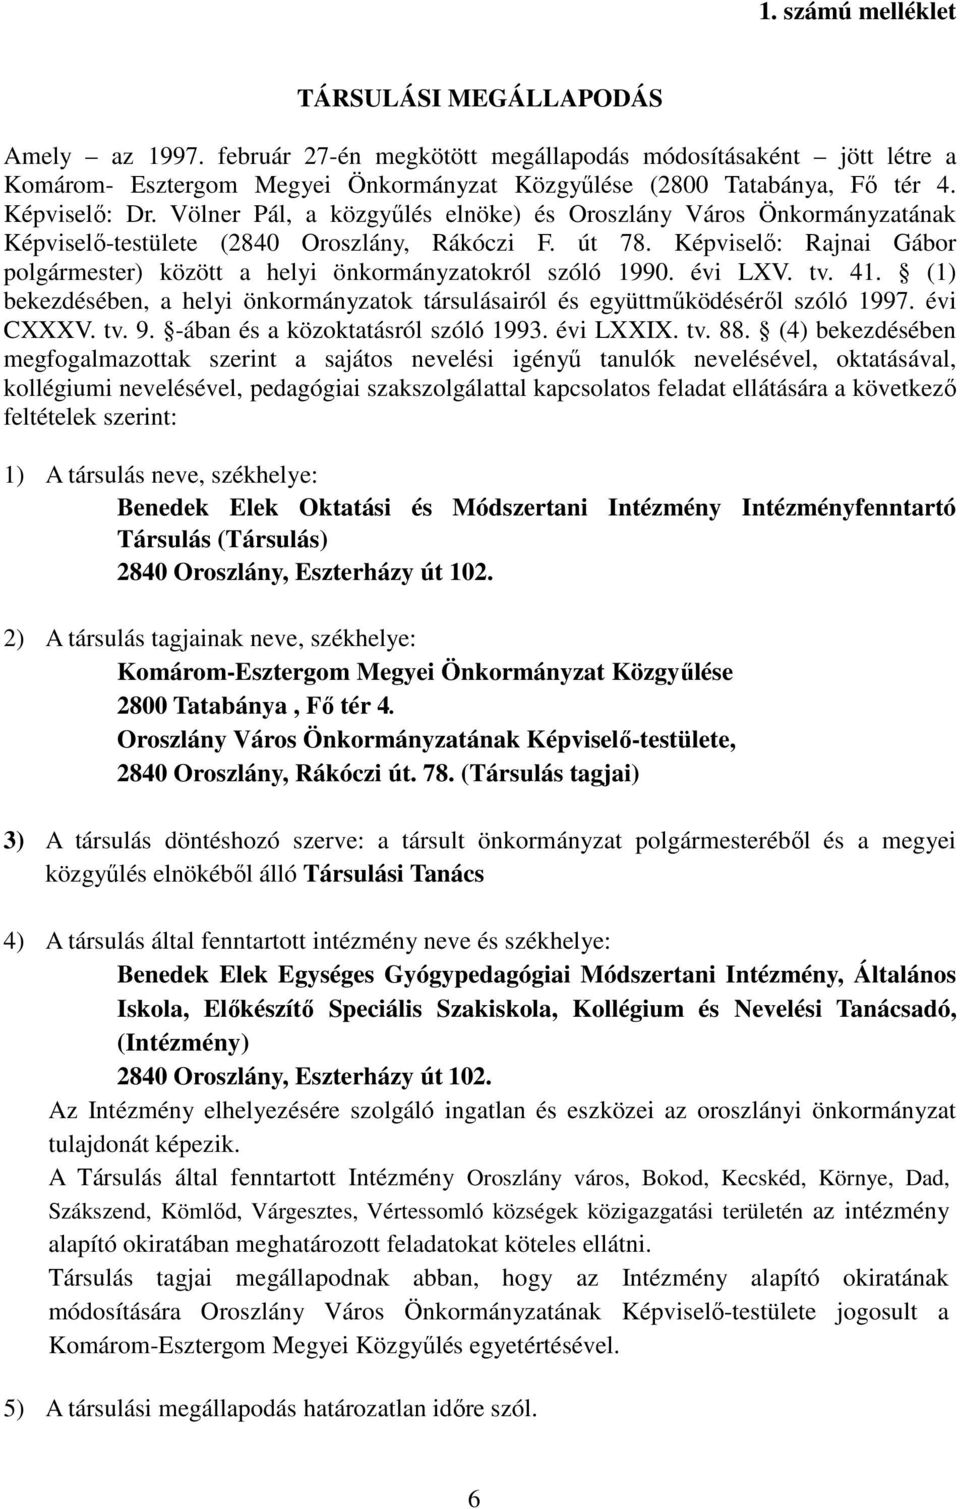 Képviselı: Rajnai Gábor polgármester) között a helyi önkormányzatokról szóló 1990. évi LXV. tv. 41. (1) bekezdésében, a helyi önkormányzatok társulásairól és együttmőködésérıl szóló 1997. évi CXXXV.